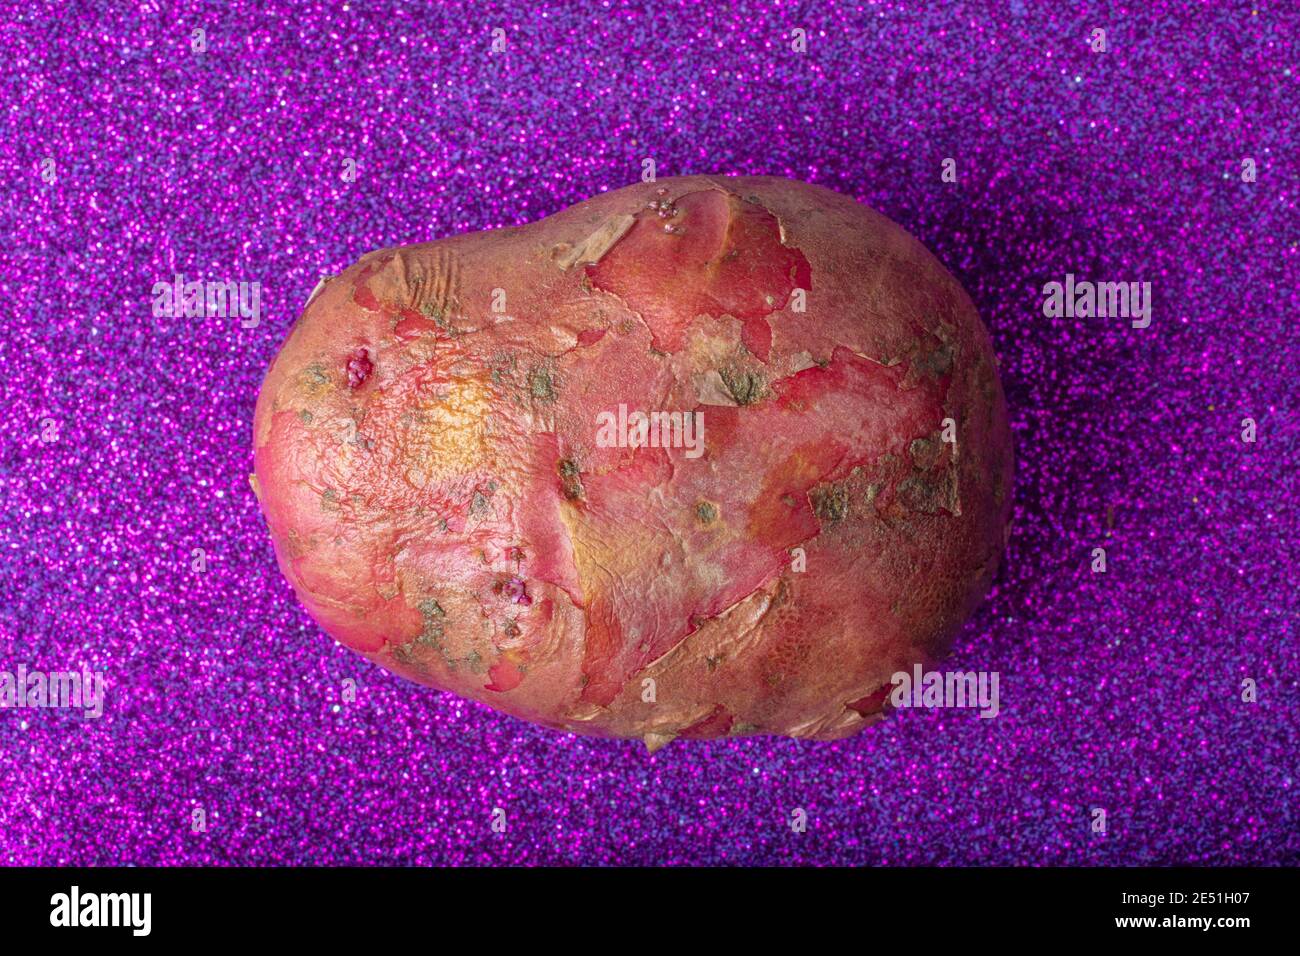 Patata rossa su scintillante sfondo viola. Immagine macro aerea. Foto Stock